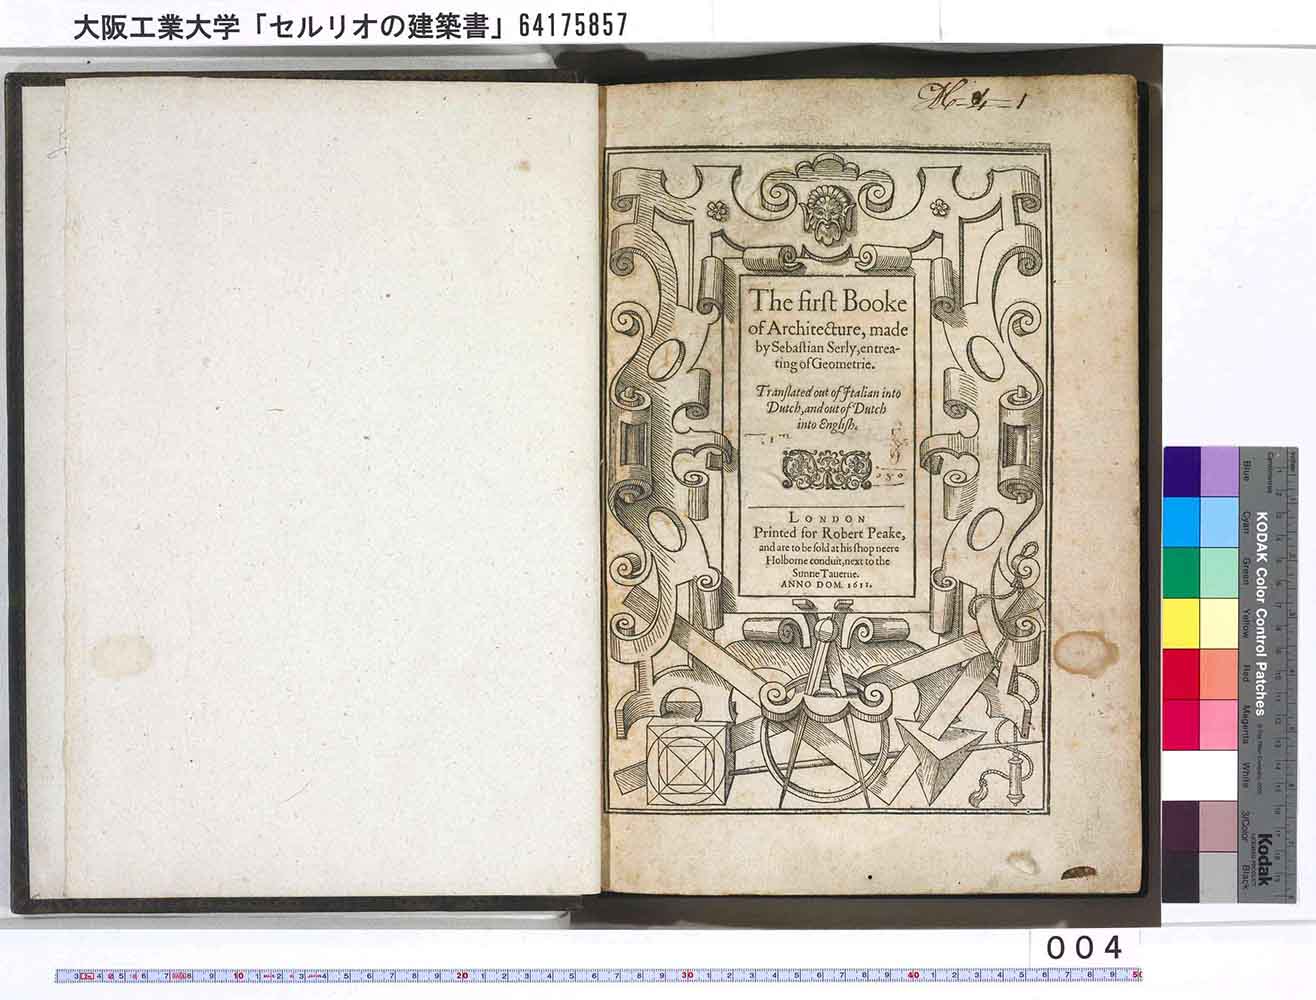 「セルリオの建築書」セバスチャン・セルリオ著 １６１１年 ロンドン